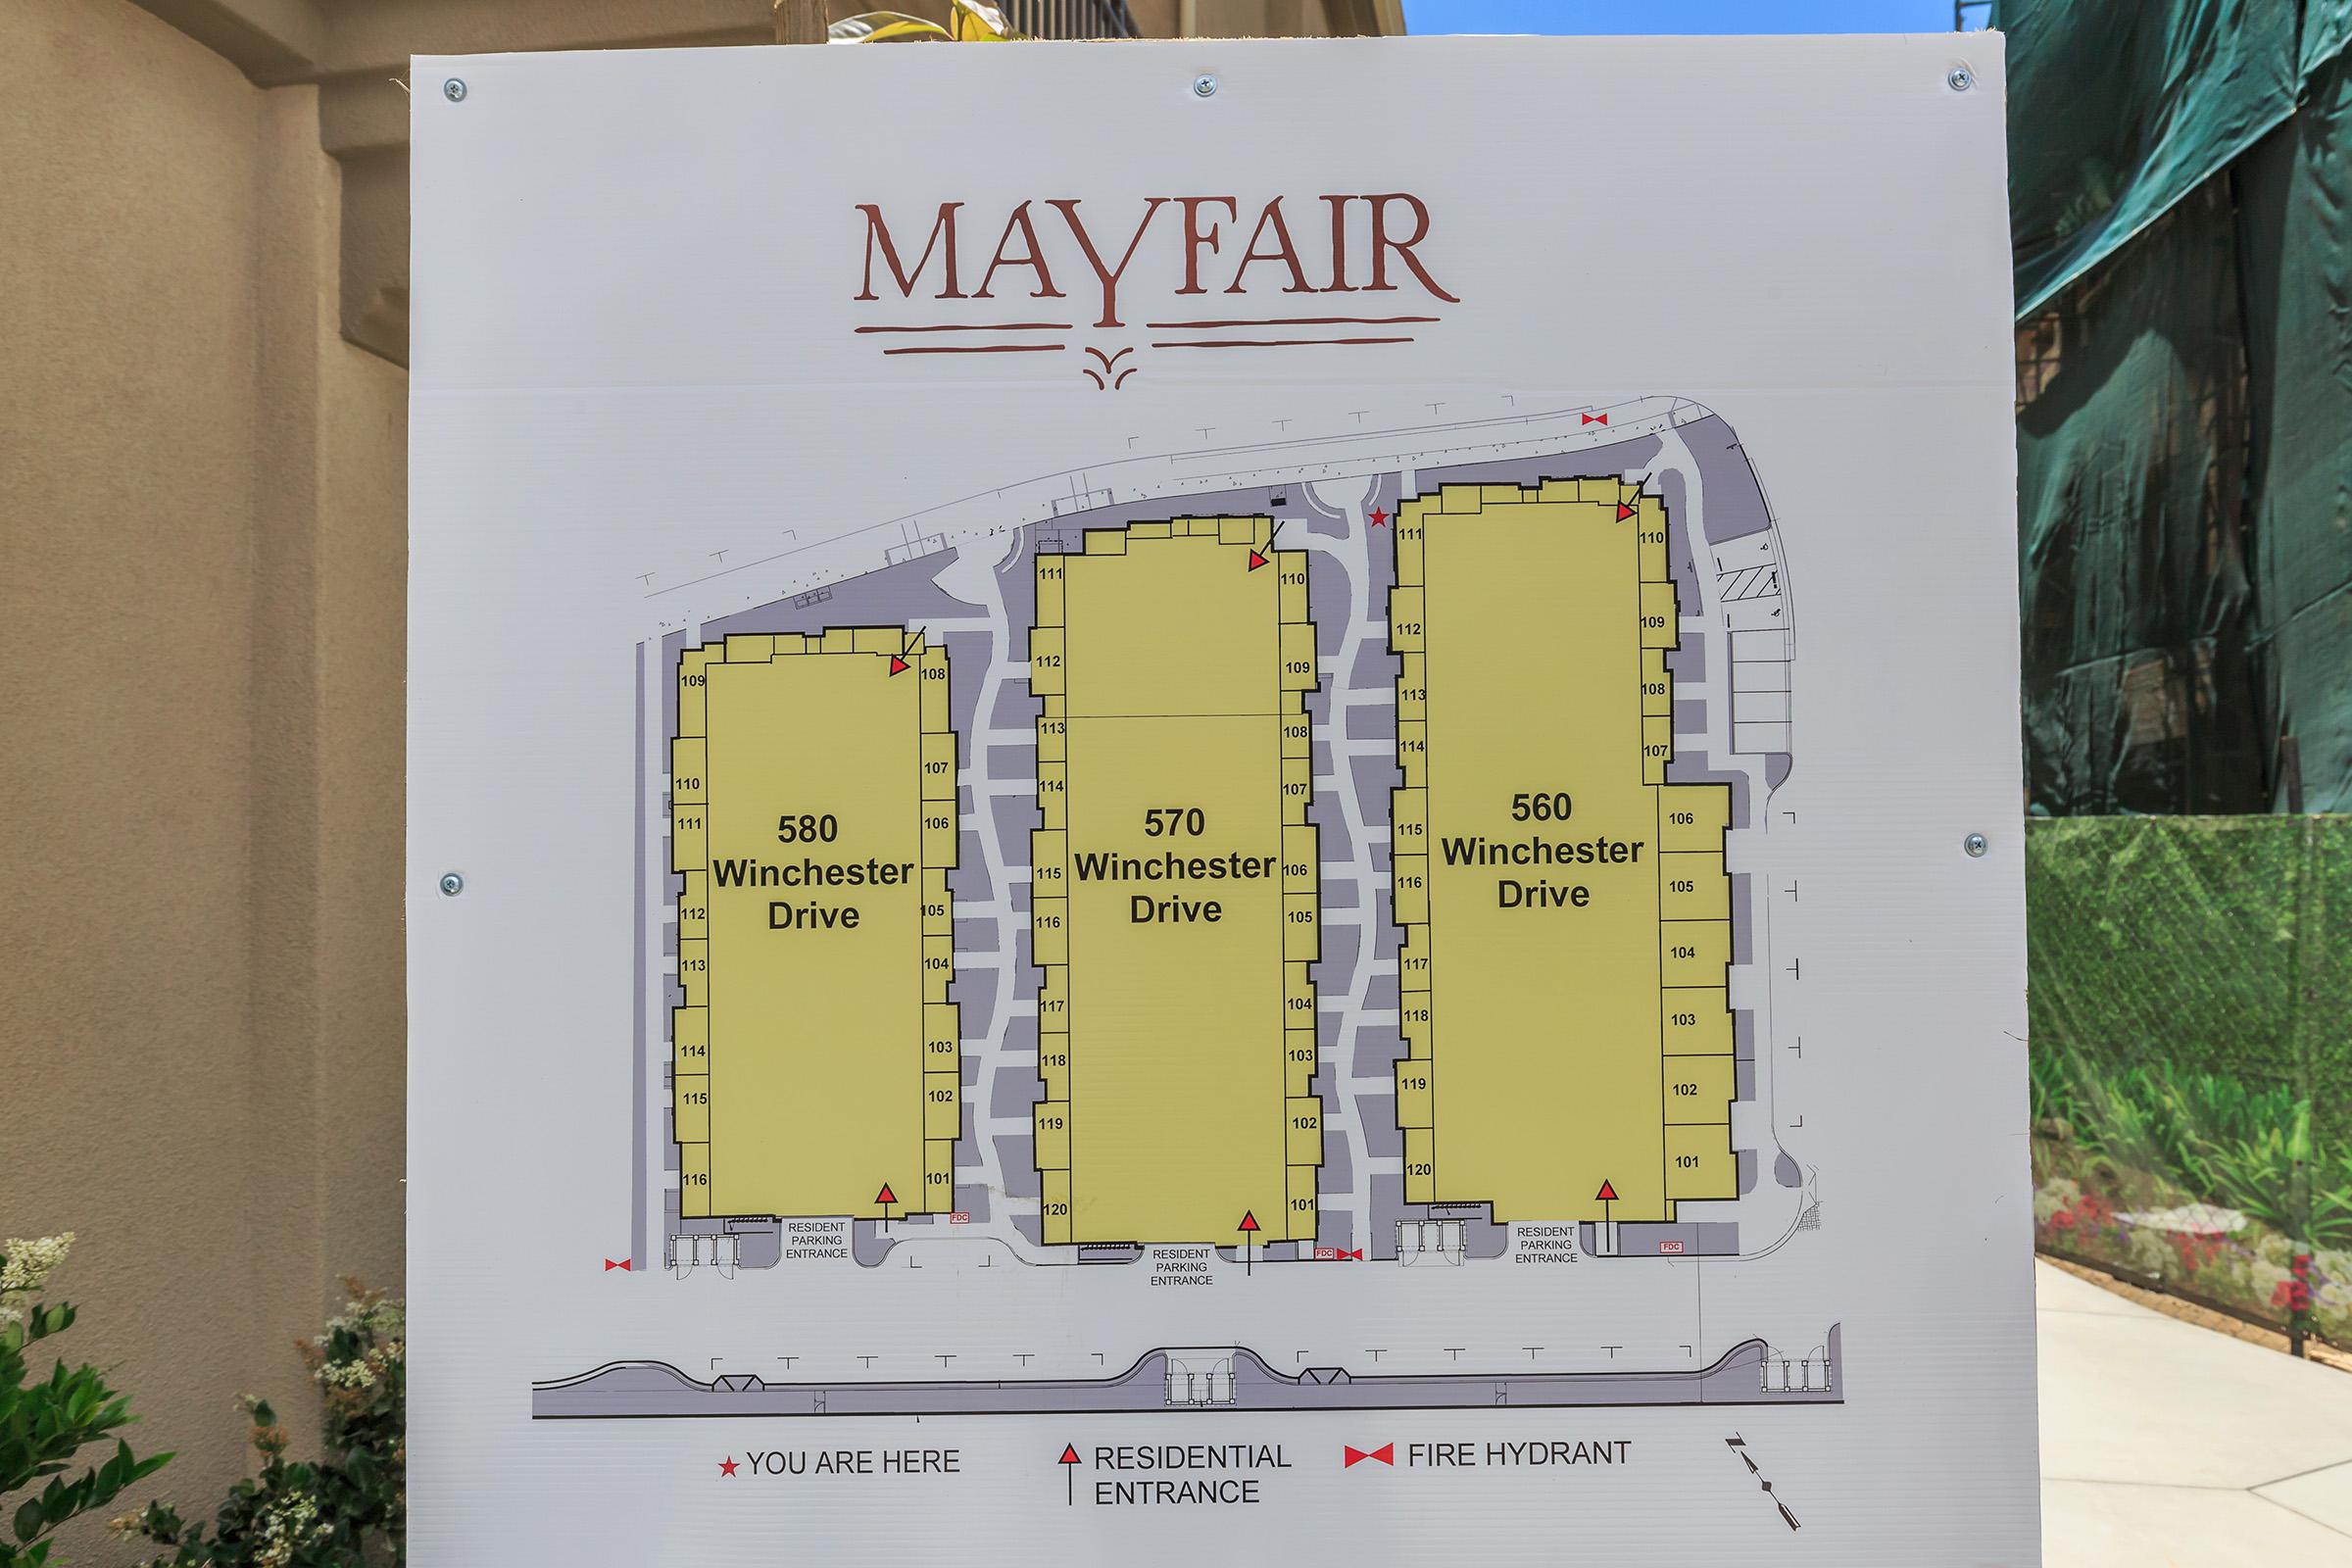 Mayfair sitemap sign